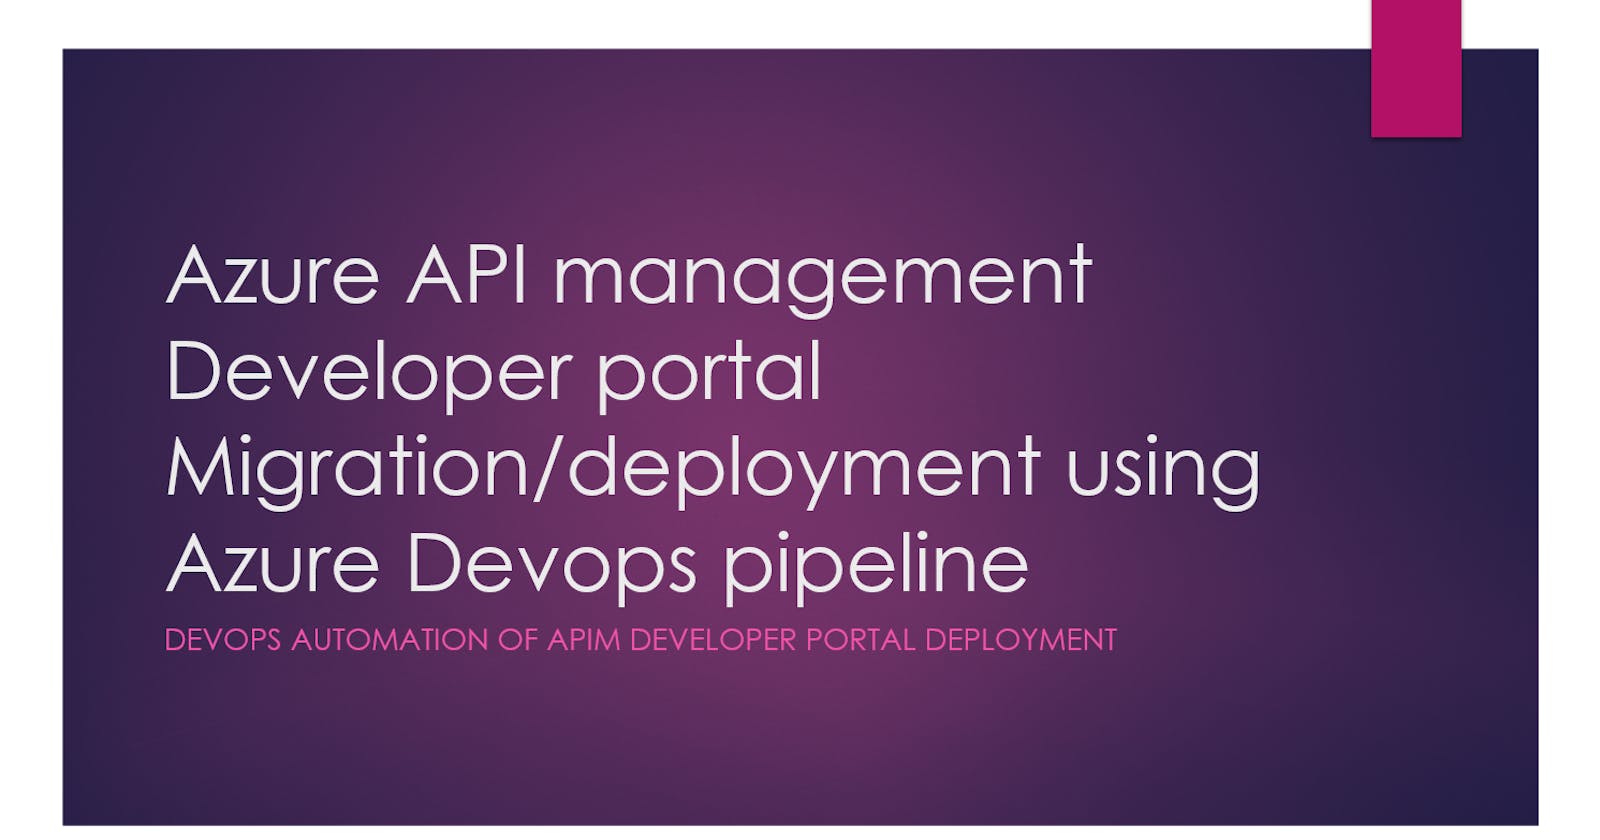 Azure API management Developer portal Migration/deployment using Azure Devops pipeline